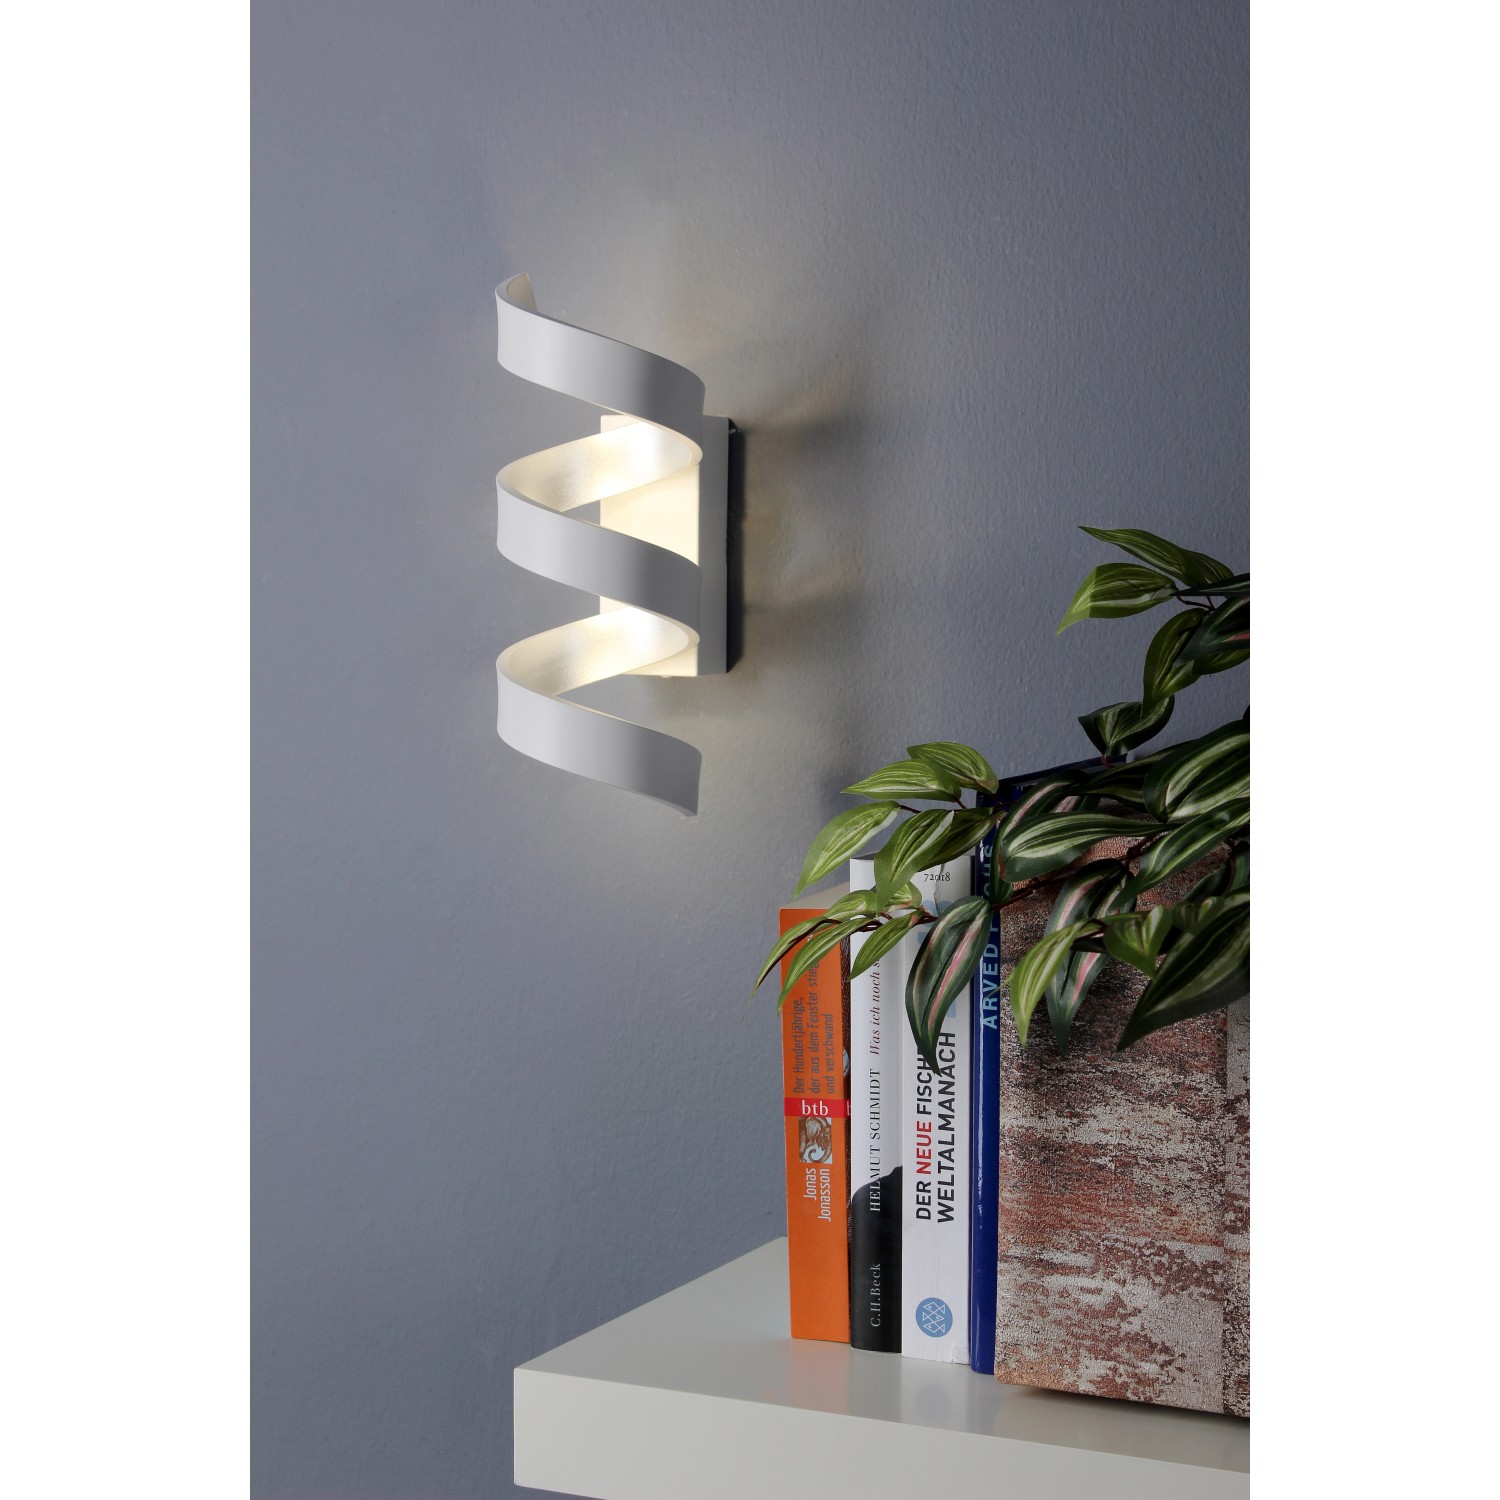 Luce Design bei kaufen 10 cm x Helix 26 Weiß-Silber x LED-Wandlampe OBI 13,5